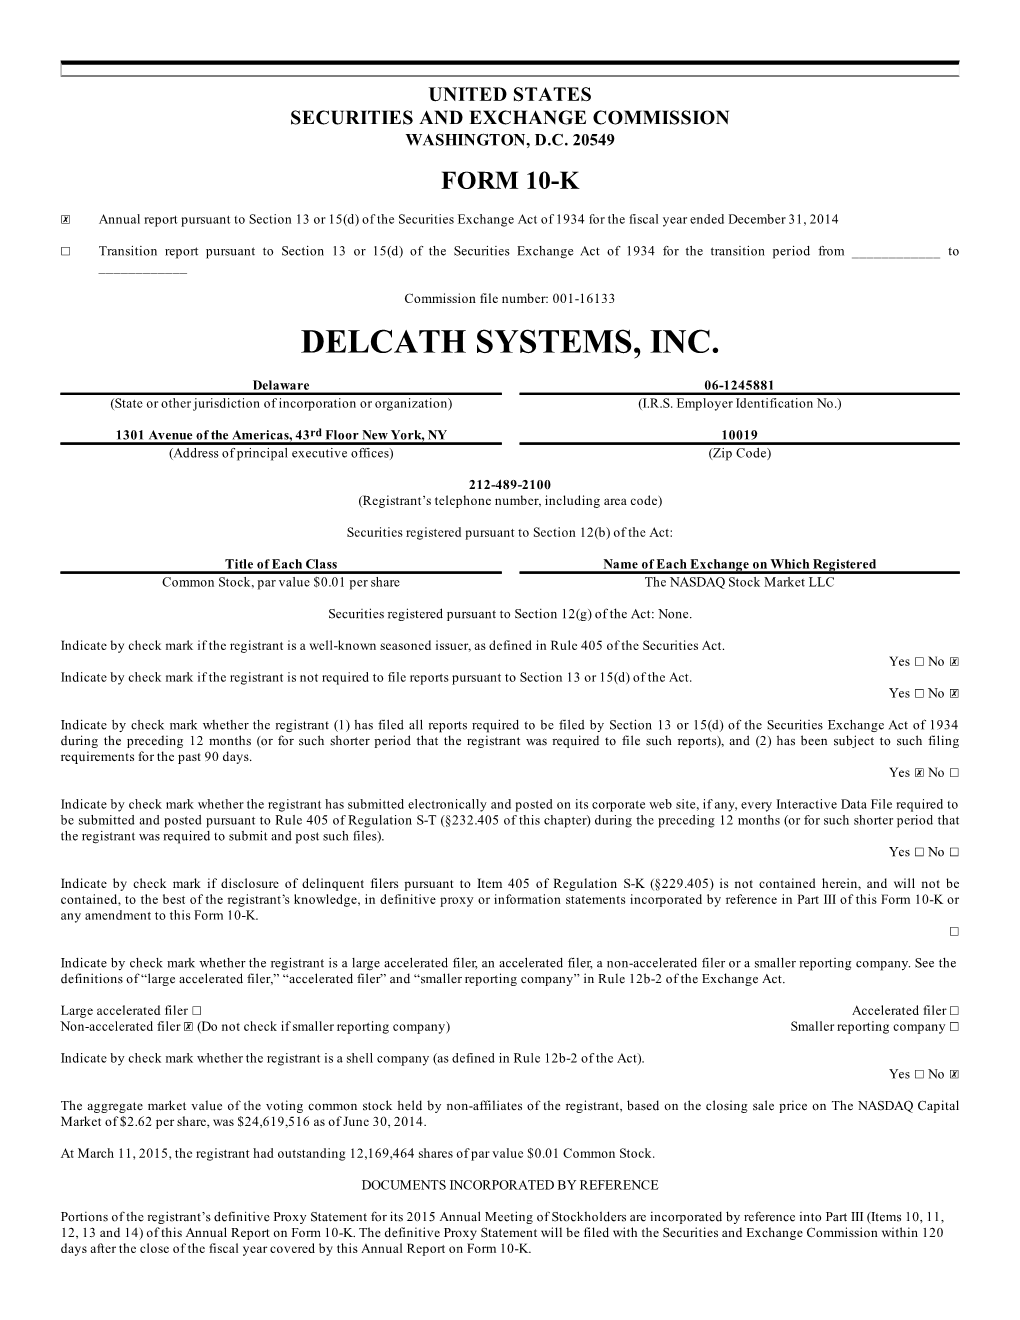 Delcath Systems, Inc